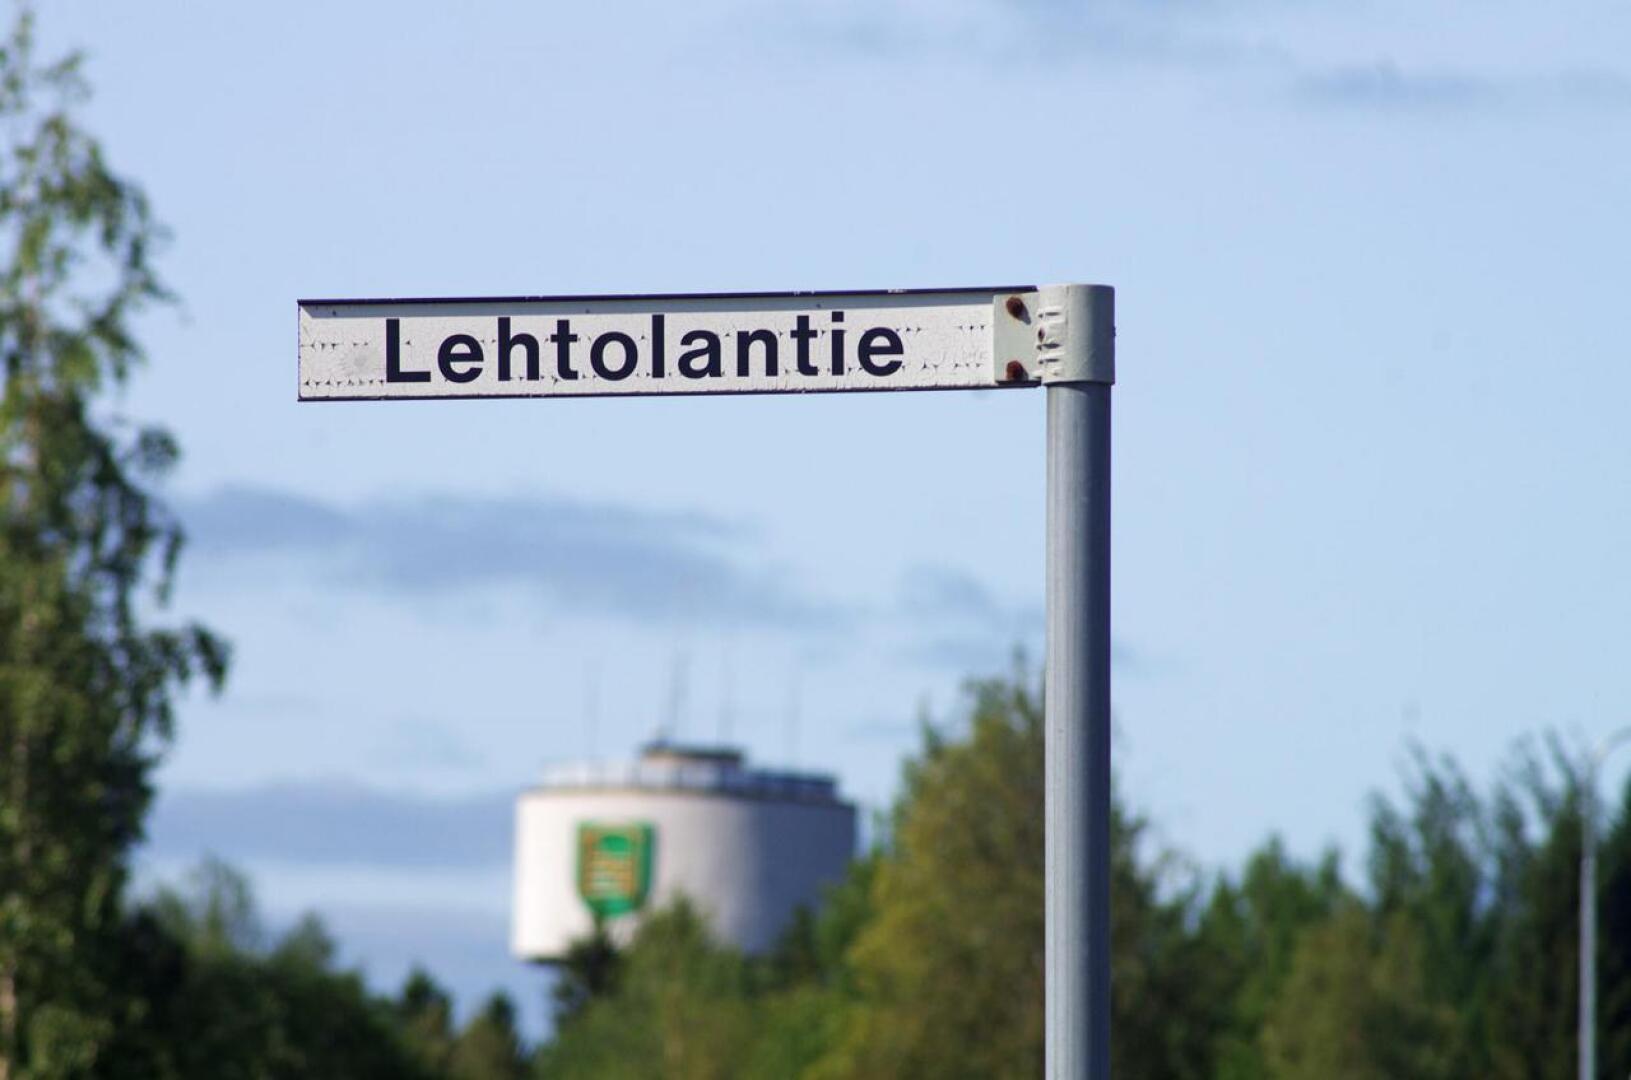 Nivalan kaupungin aikeet muuttaa Lehtolantie jääkiekkoilija Atte Ohtamaan mukaan Atentieksi ovat joutuneet uuteen harkintaan.